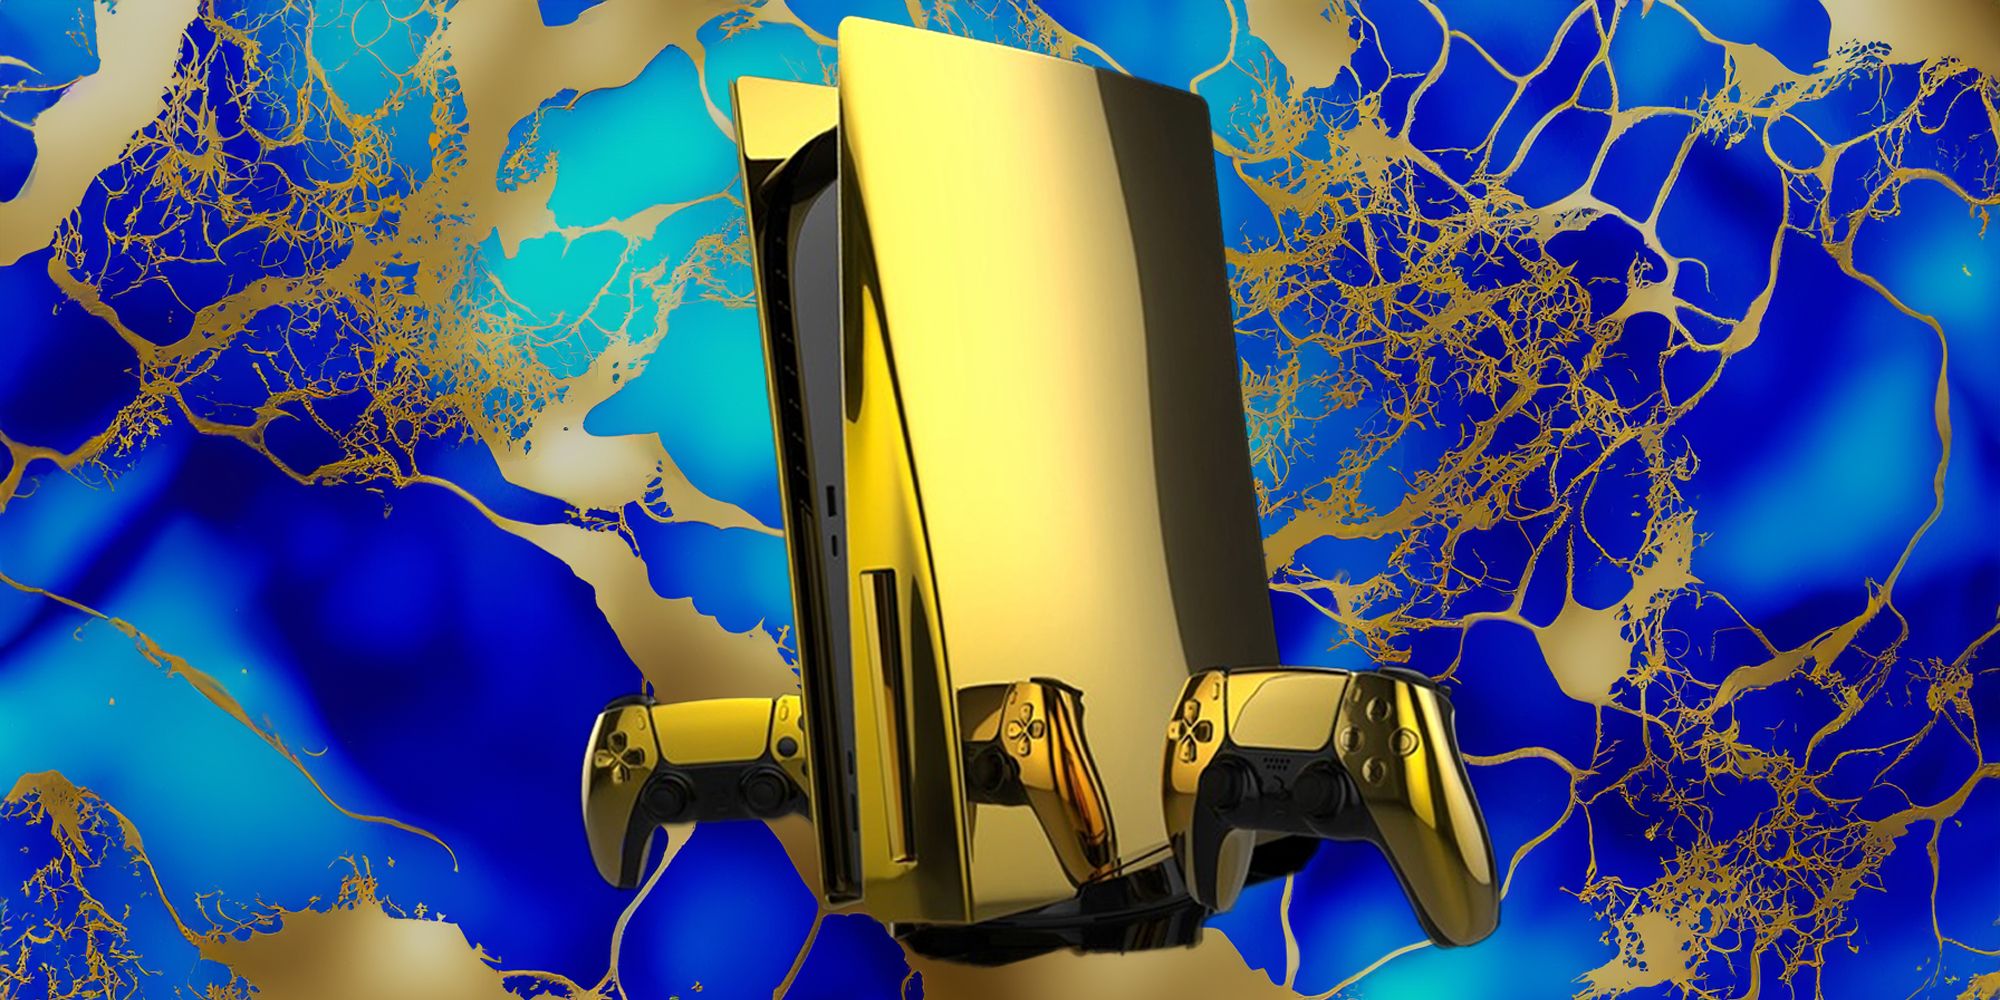 Um PS5 dourado contra um fundo azul e dourado